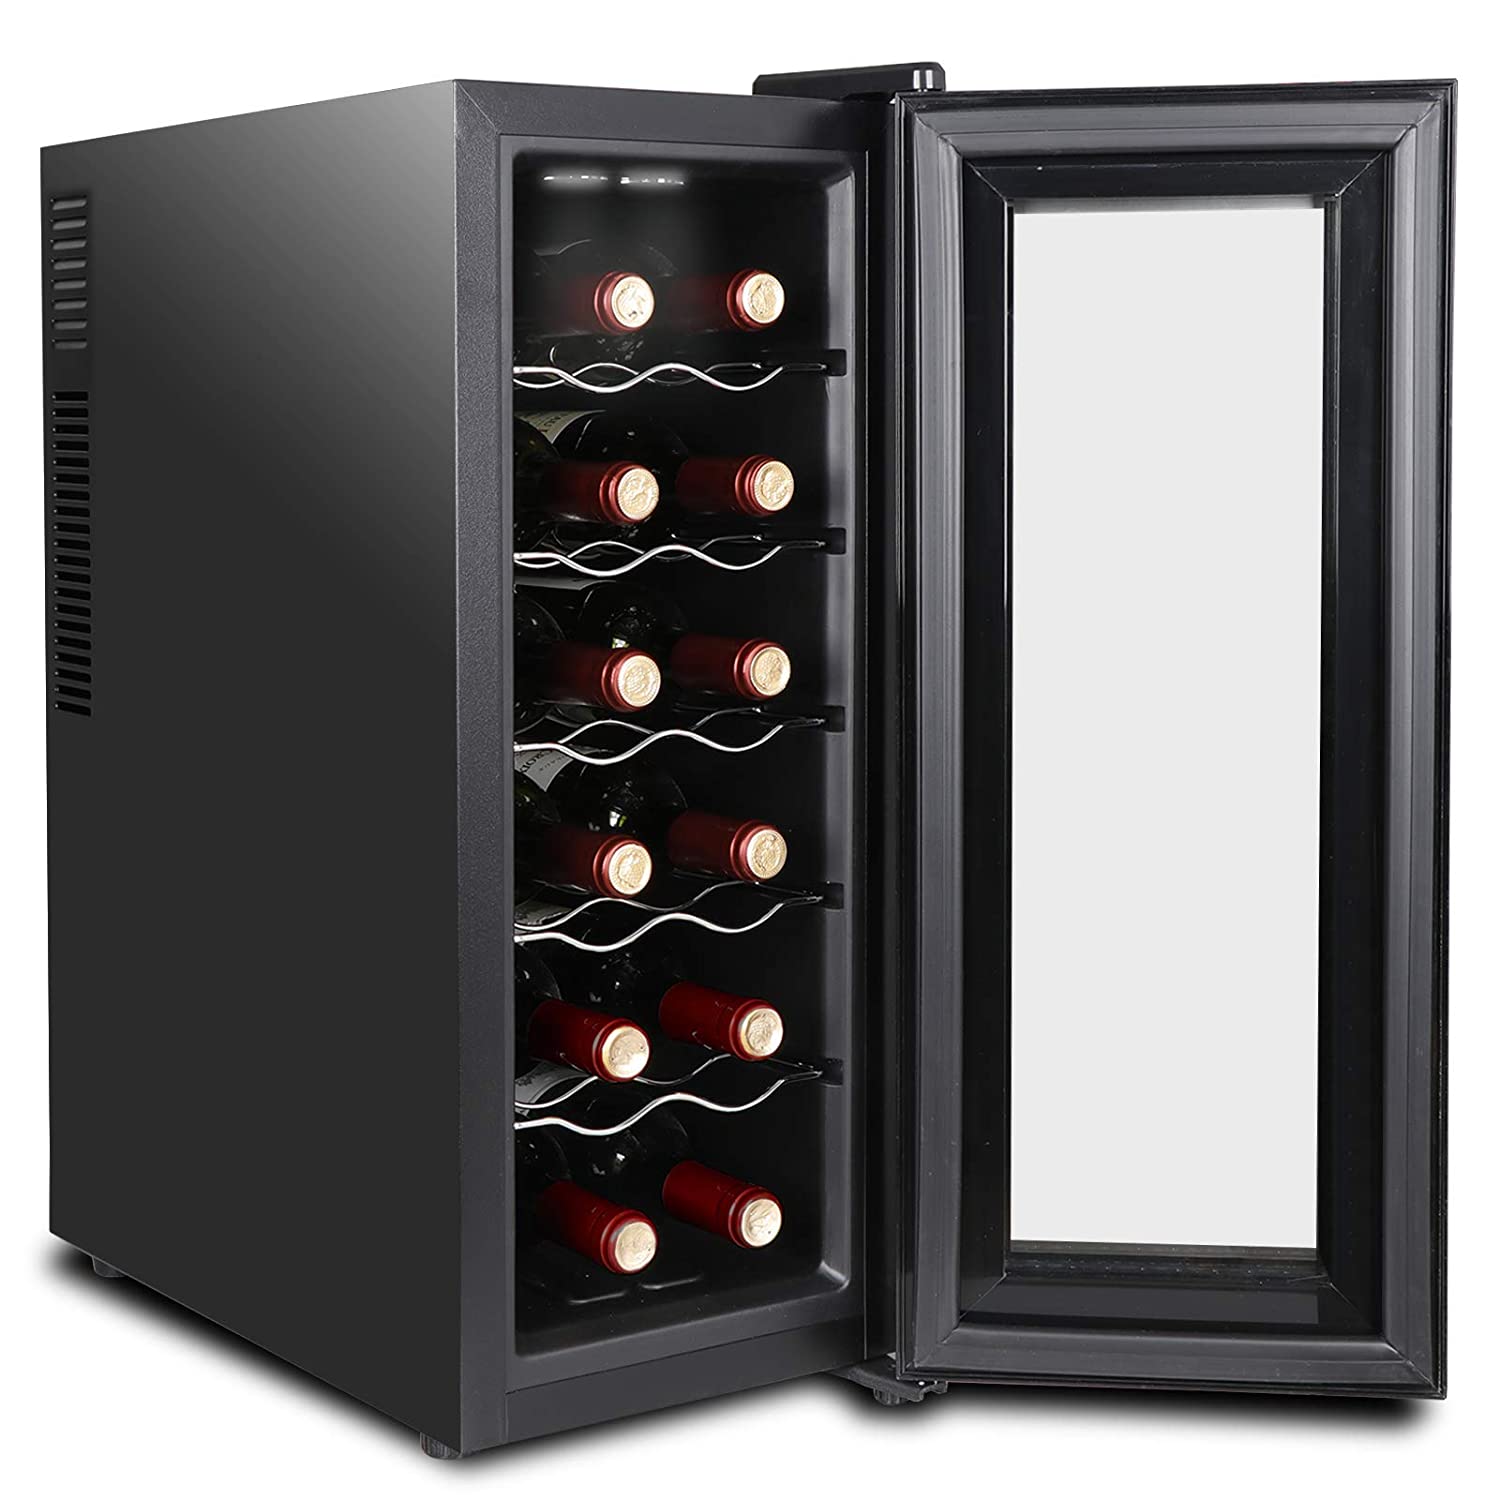 Как выбрать винный шкаф, он же холодильник для хранения вина